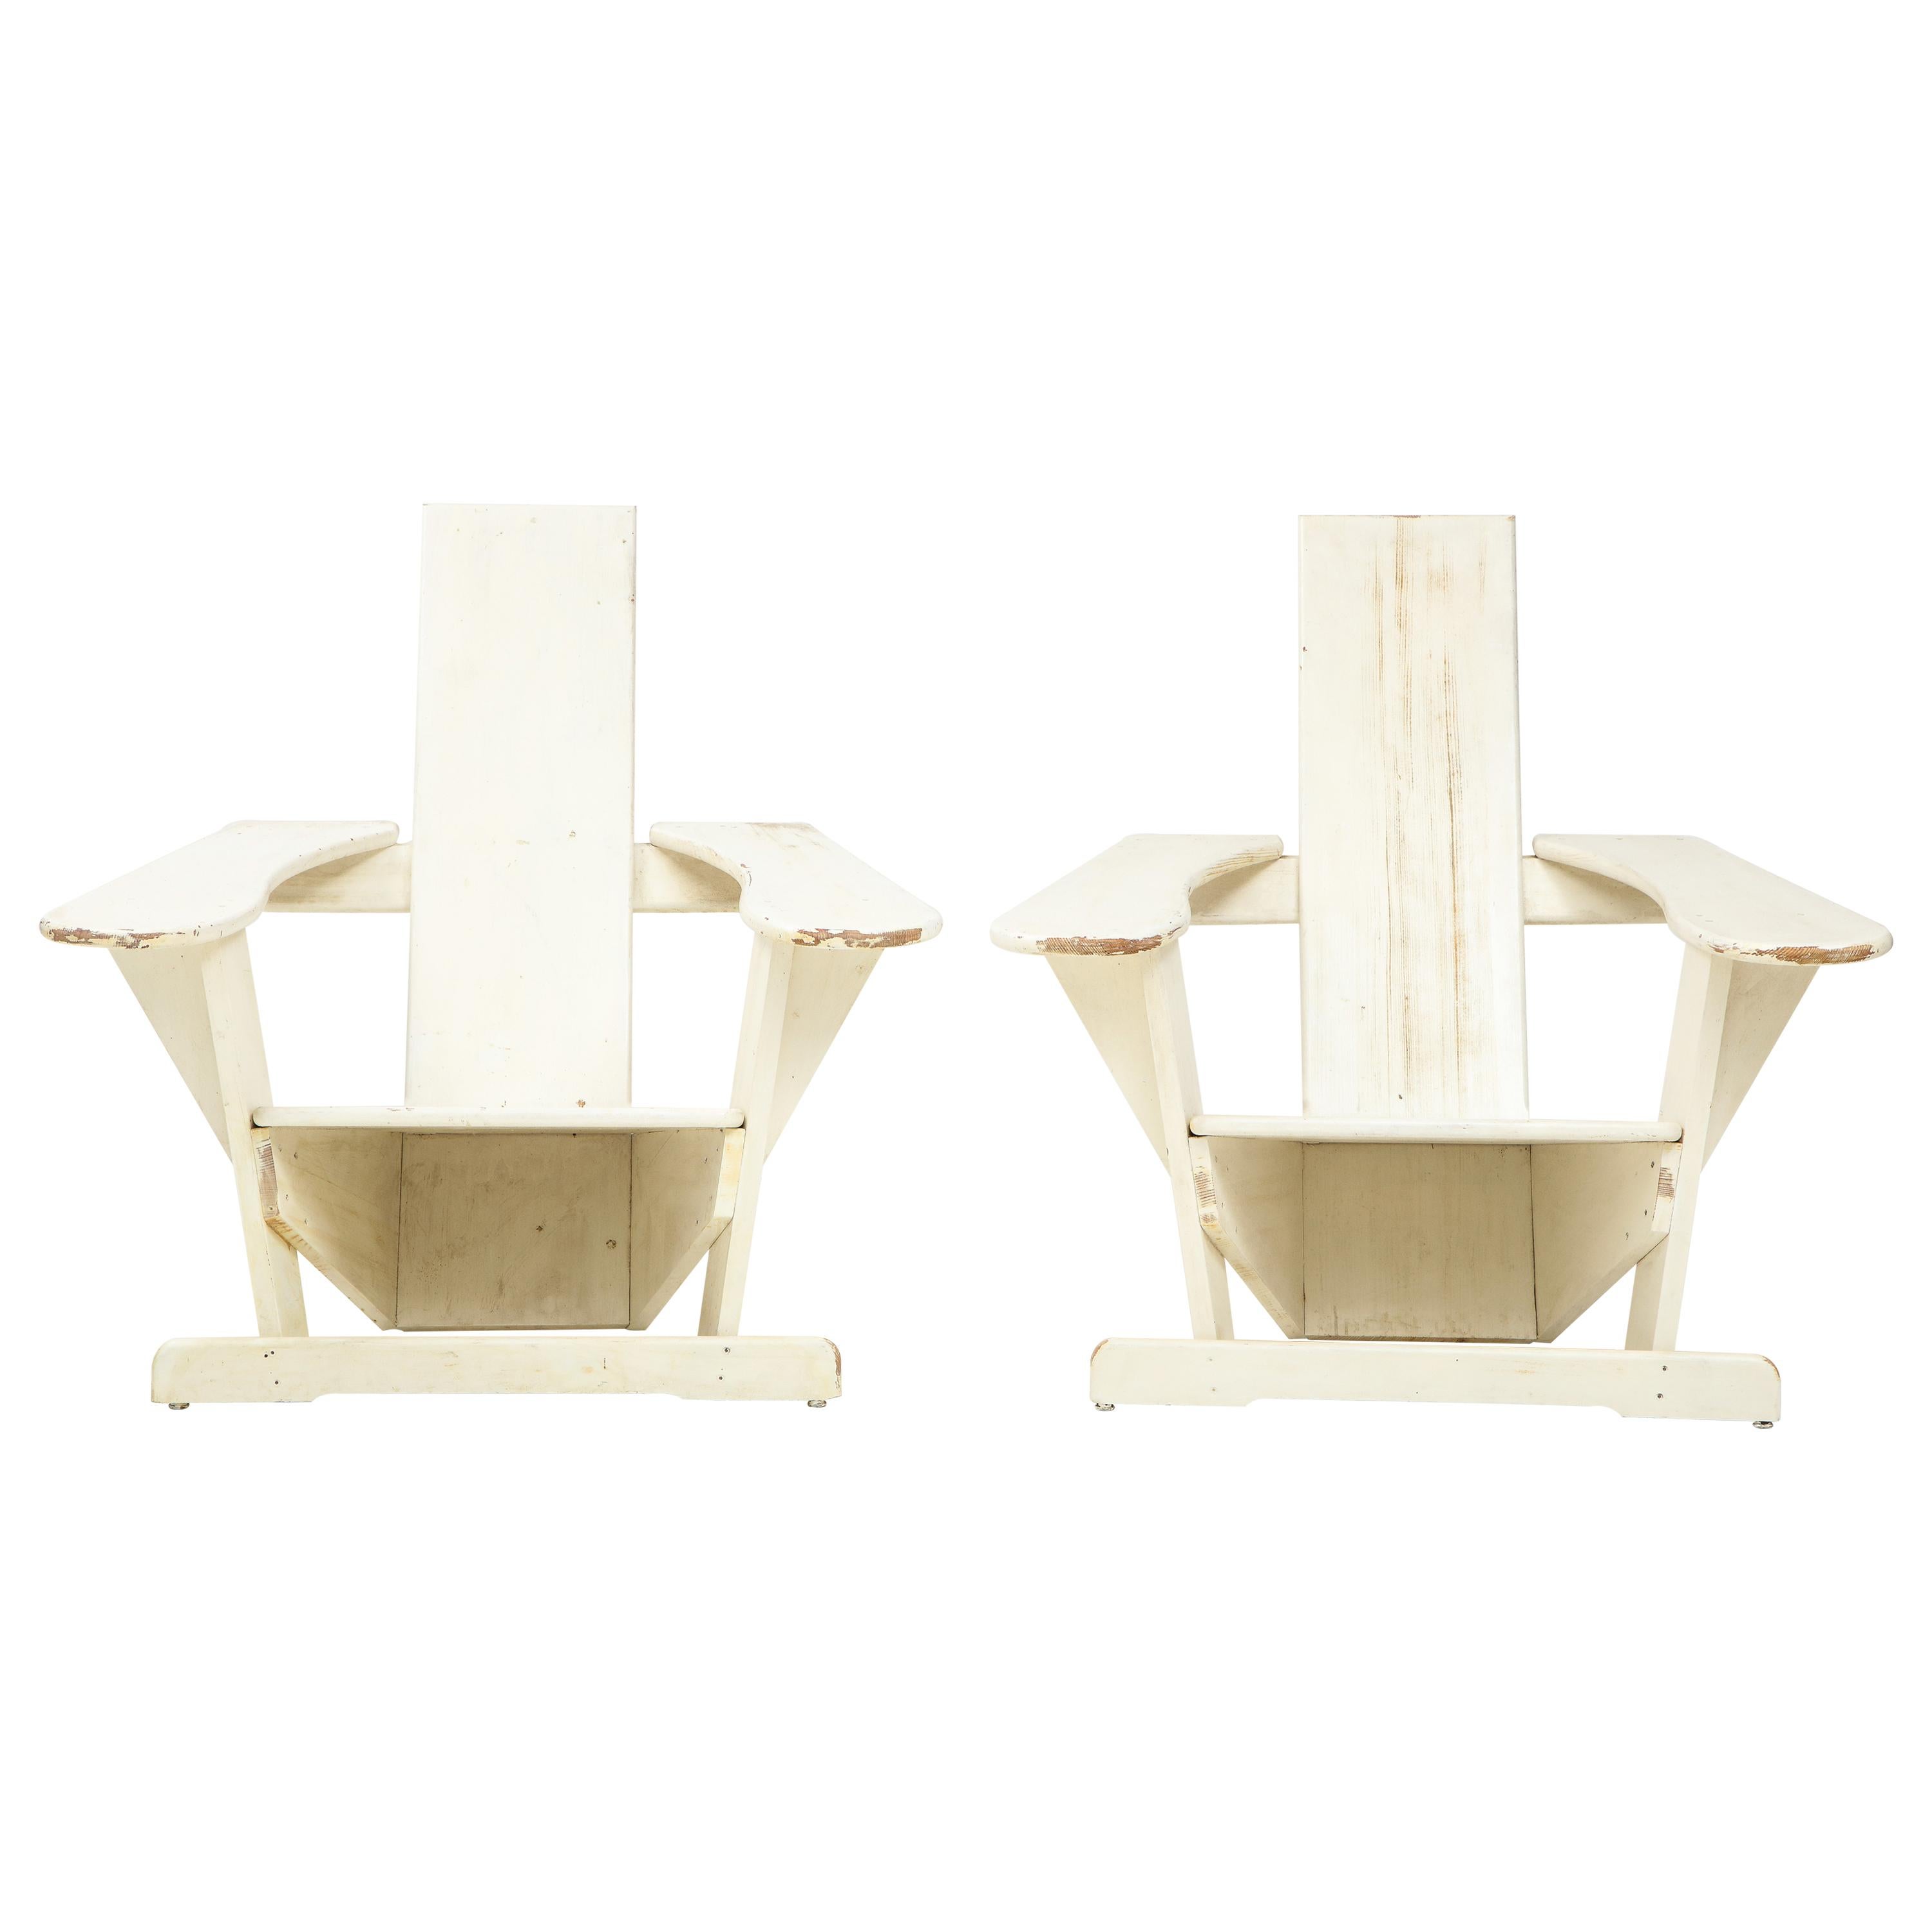 Pair of chairs after Pierre Dariel, ‘Biarrtiz’ model, France, c. 1926
Measures: H 42.5, W 37.5, D 39.75 in.  $9400 list for the pair

Bibliography: Dariel, Pierre, Commercial Catalogue, 1926, #30, pg. 14 

Exhibition: 'AD Intérieurs 2014’, Paris: